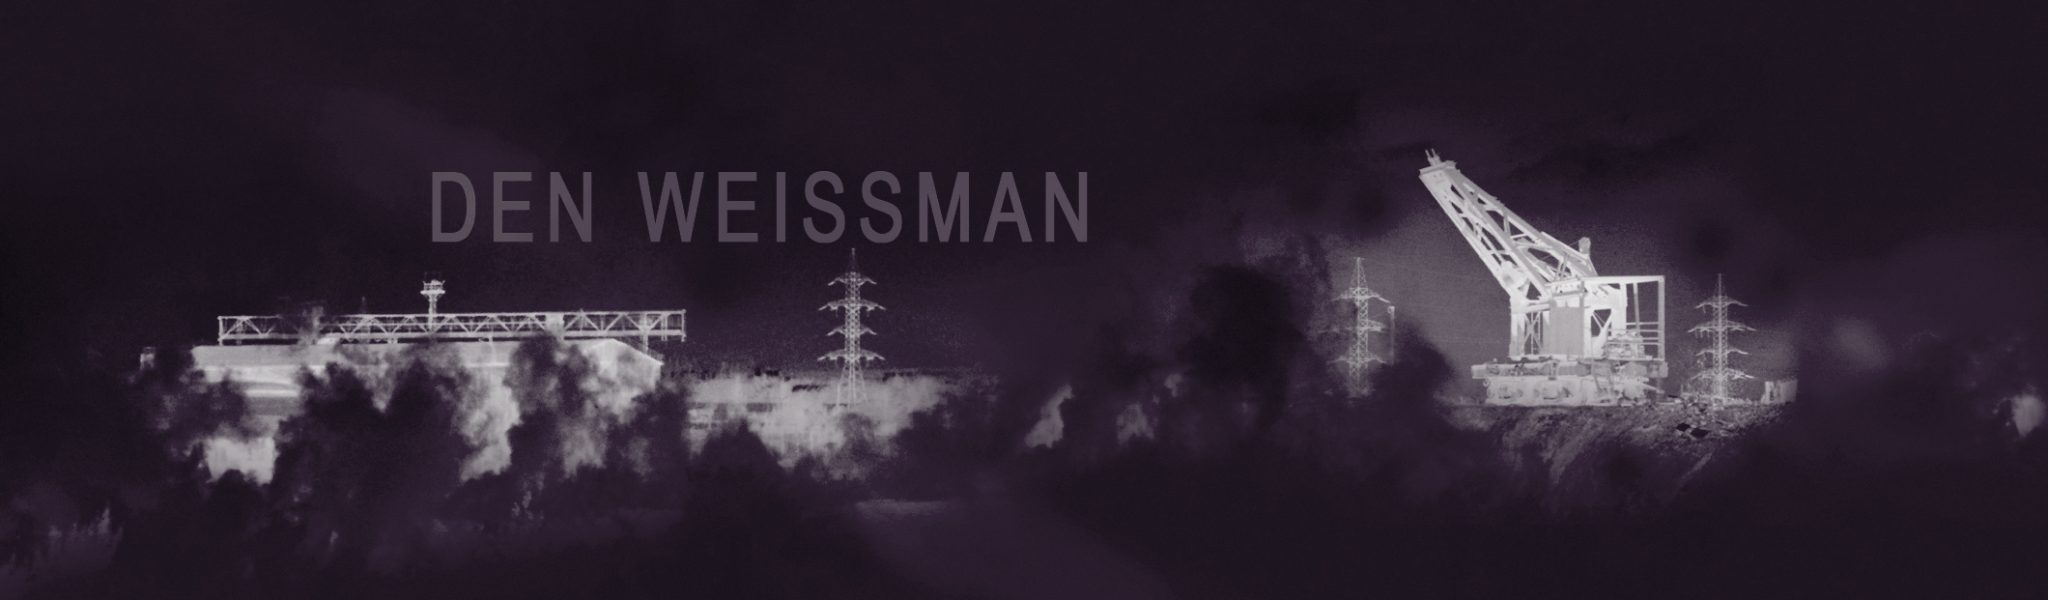 Den Weissman